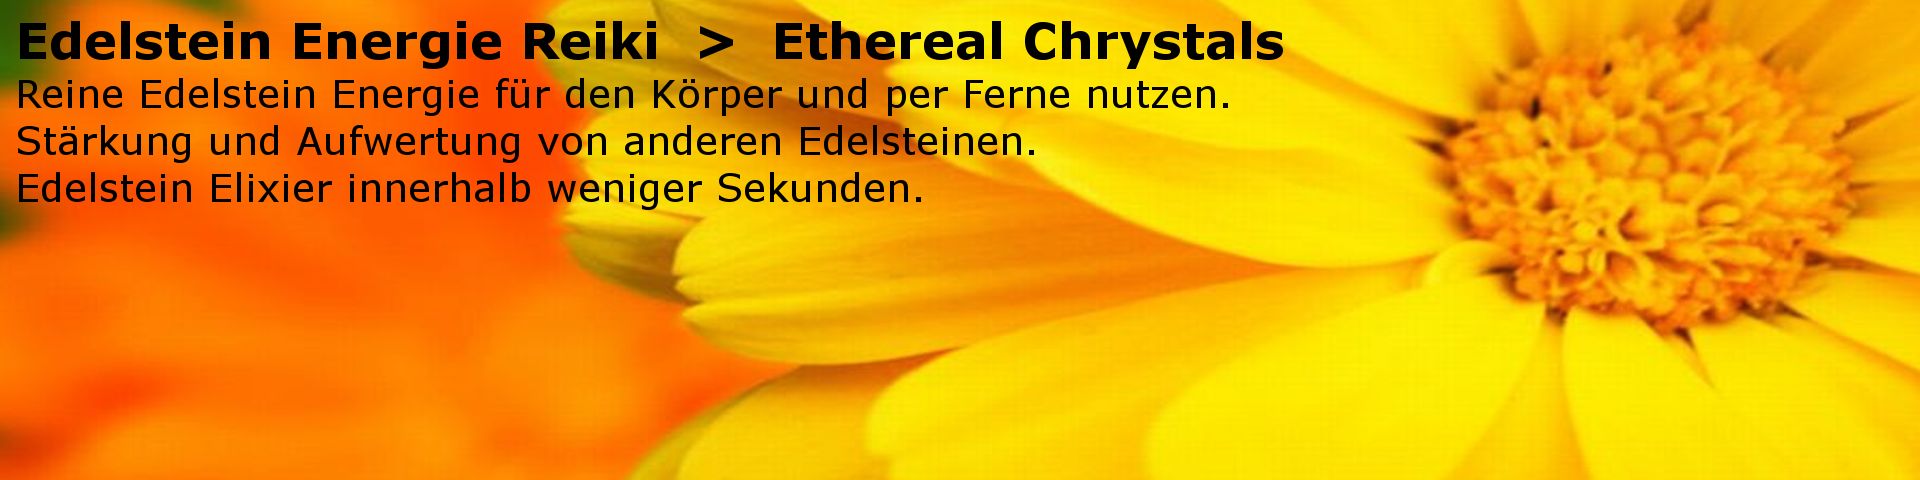  Ethereal Chrystals - Edelstein Energie. Reiki Einweihung als Ferneinweihung.